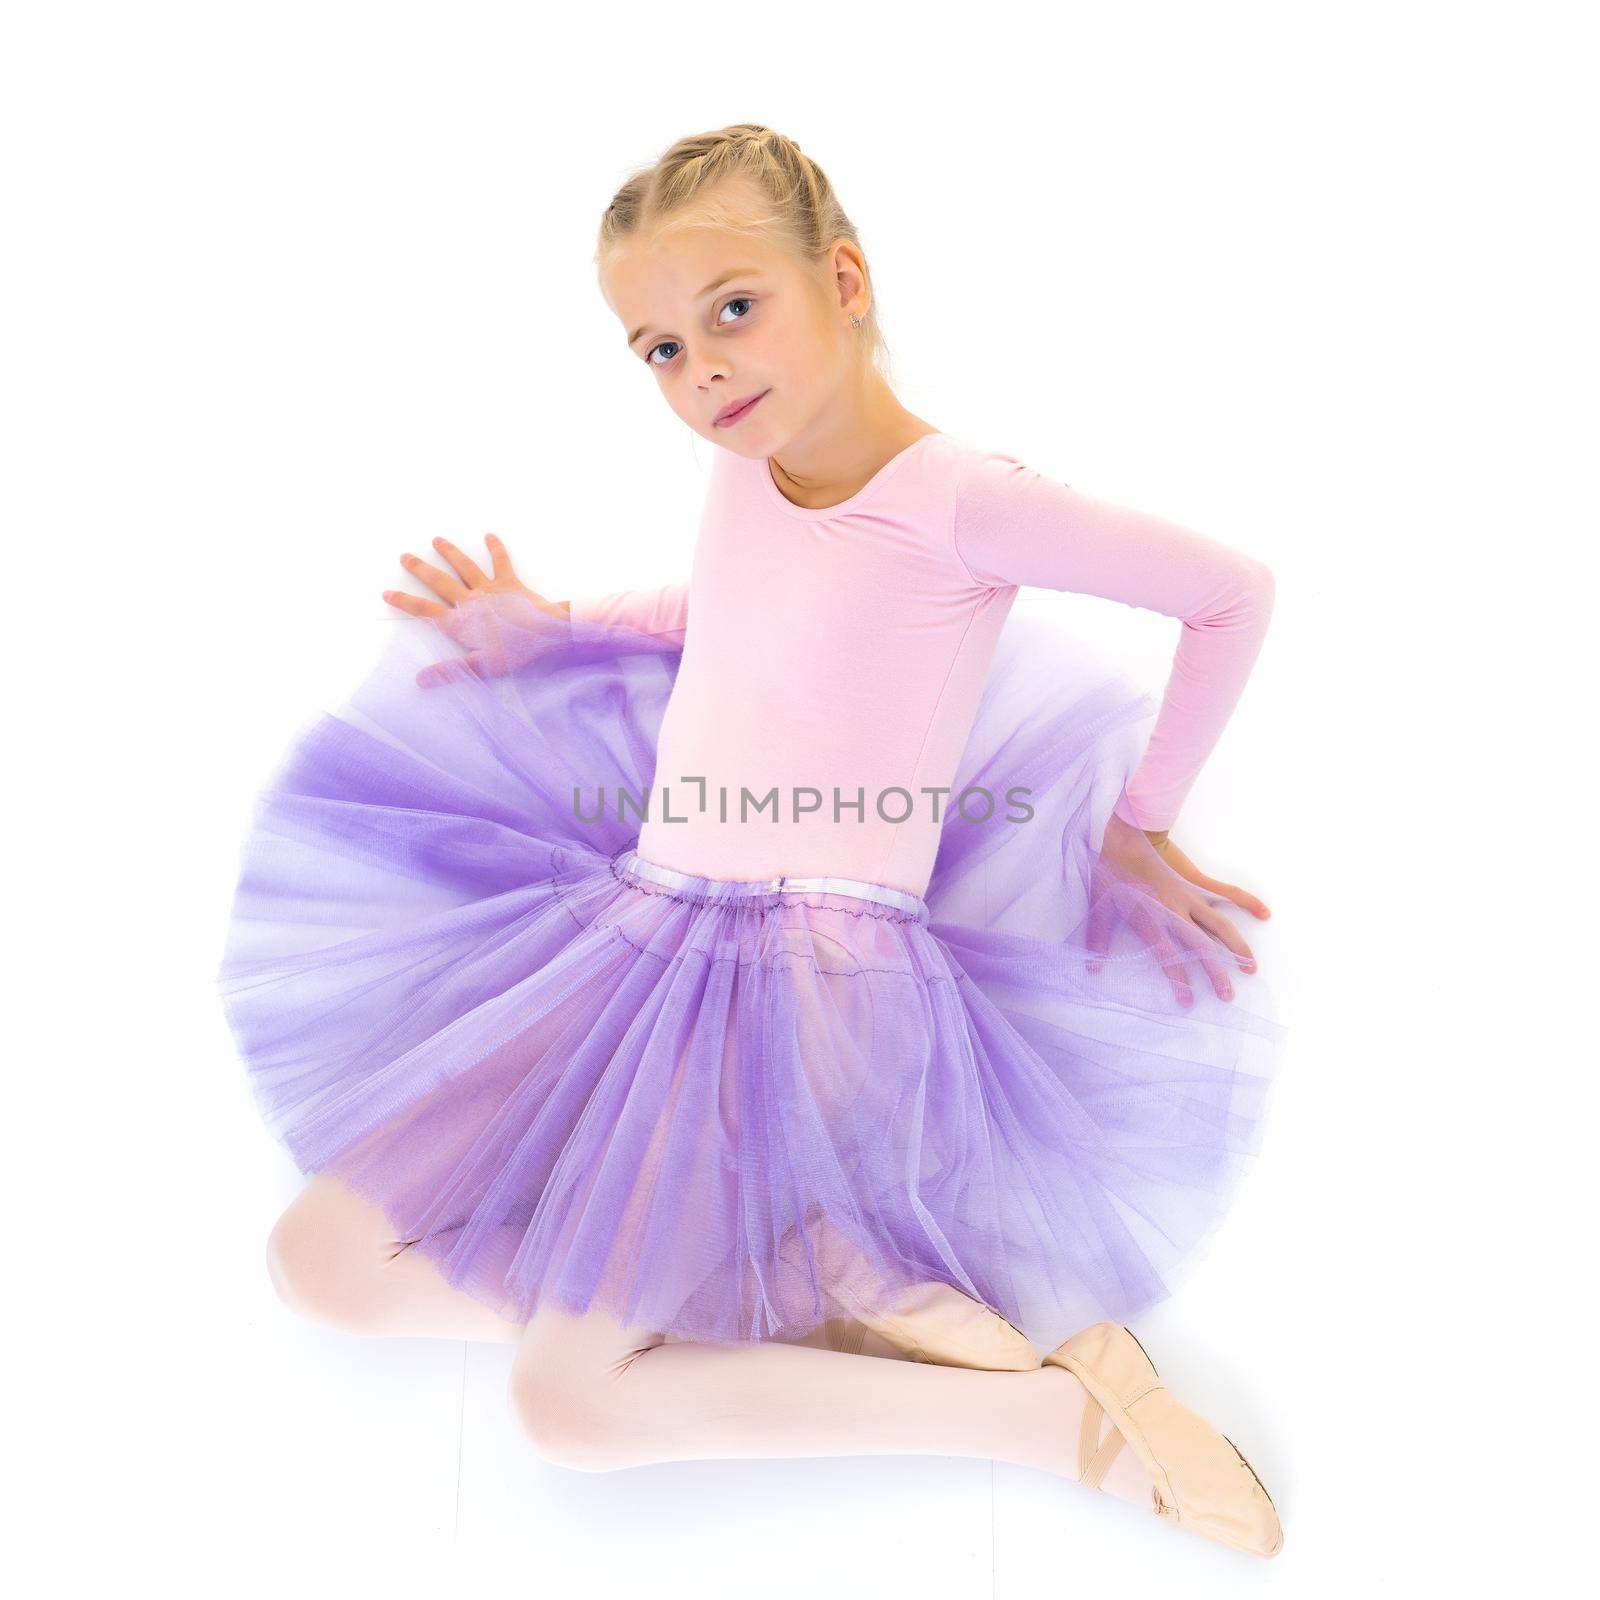 Little girl ballerina in the image posing on the floor. by kolesnikov_studio